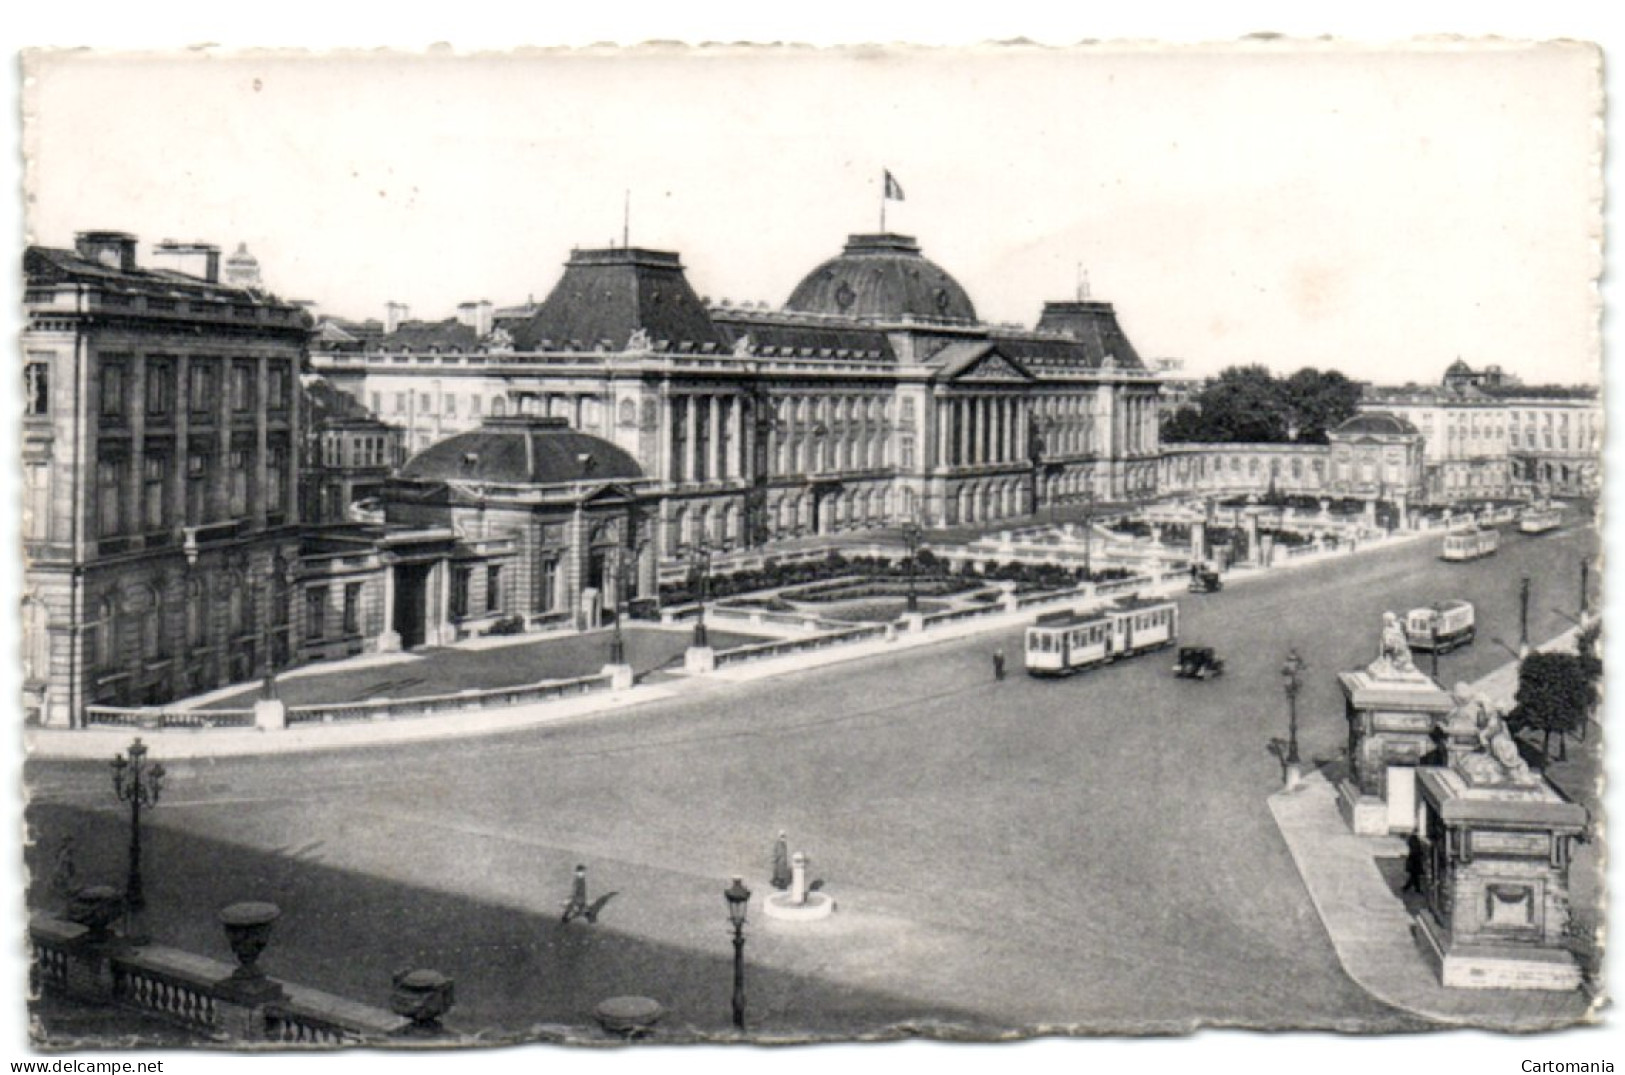 Bruxelles - Palais Du Roi - Brussel (Stad)